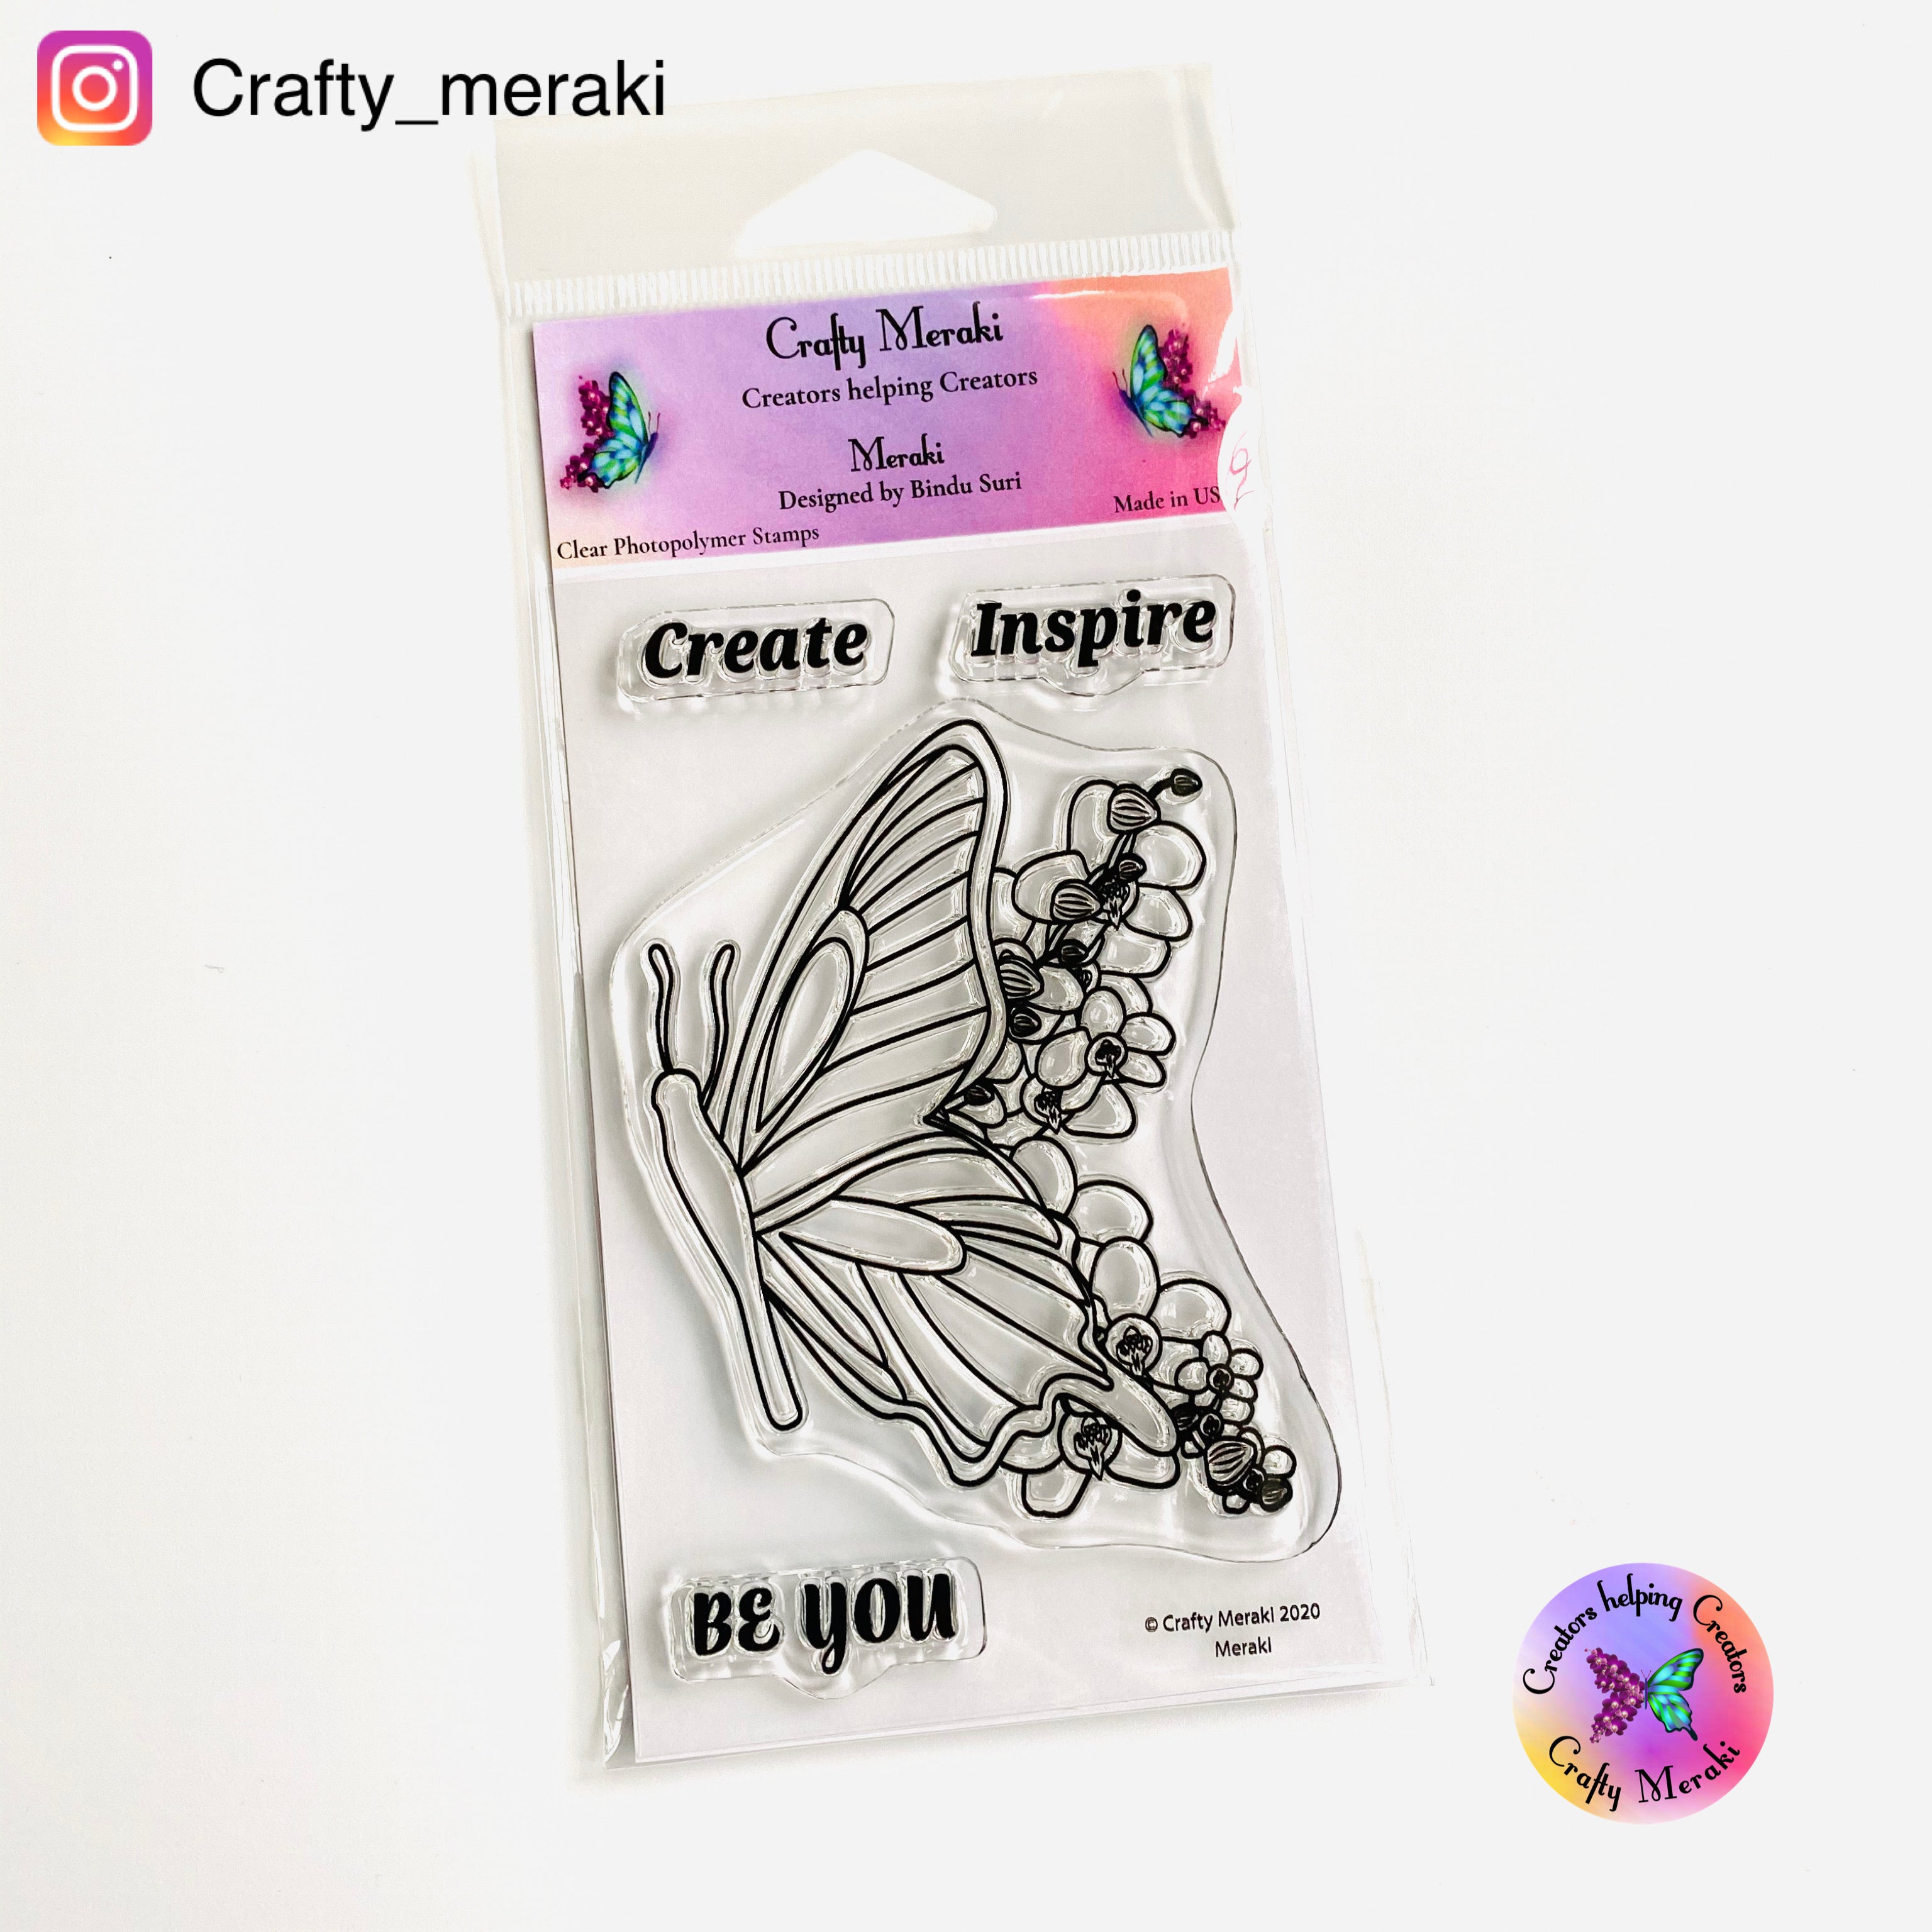 Crafty Meraki MERAKI Clear stamp set - Crafty Meraki